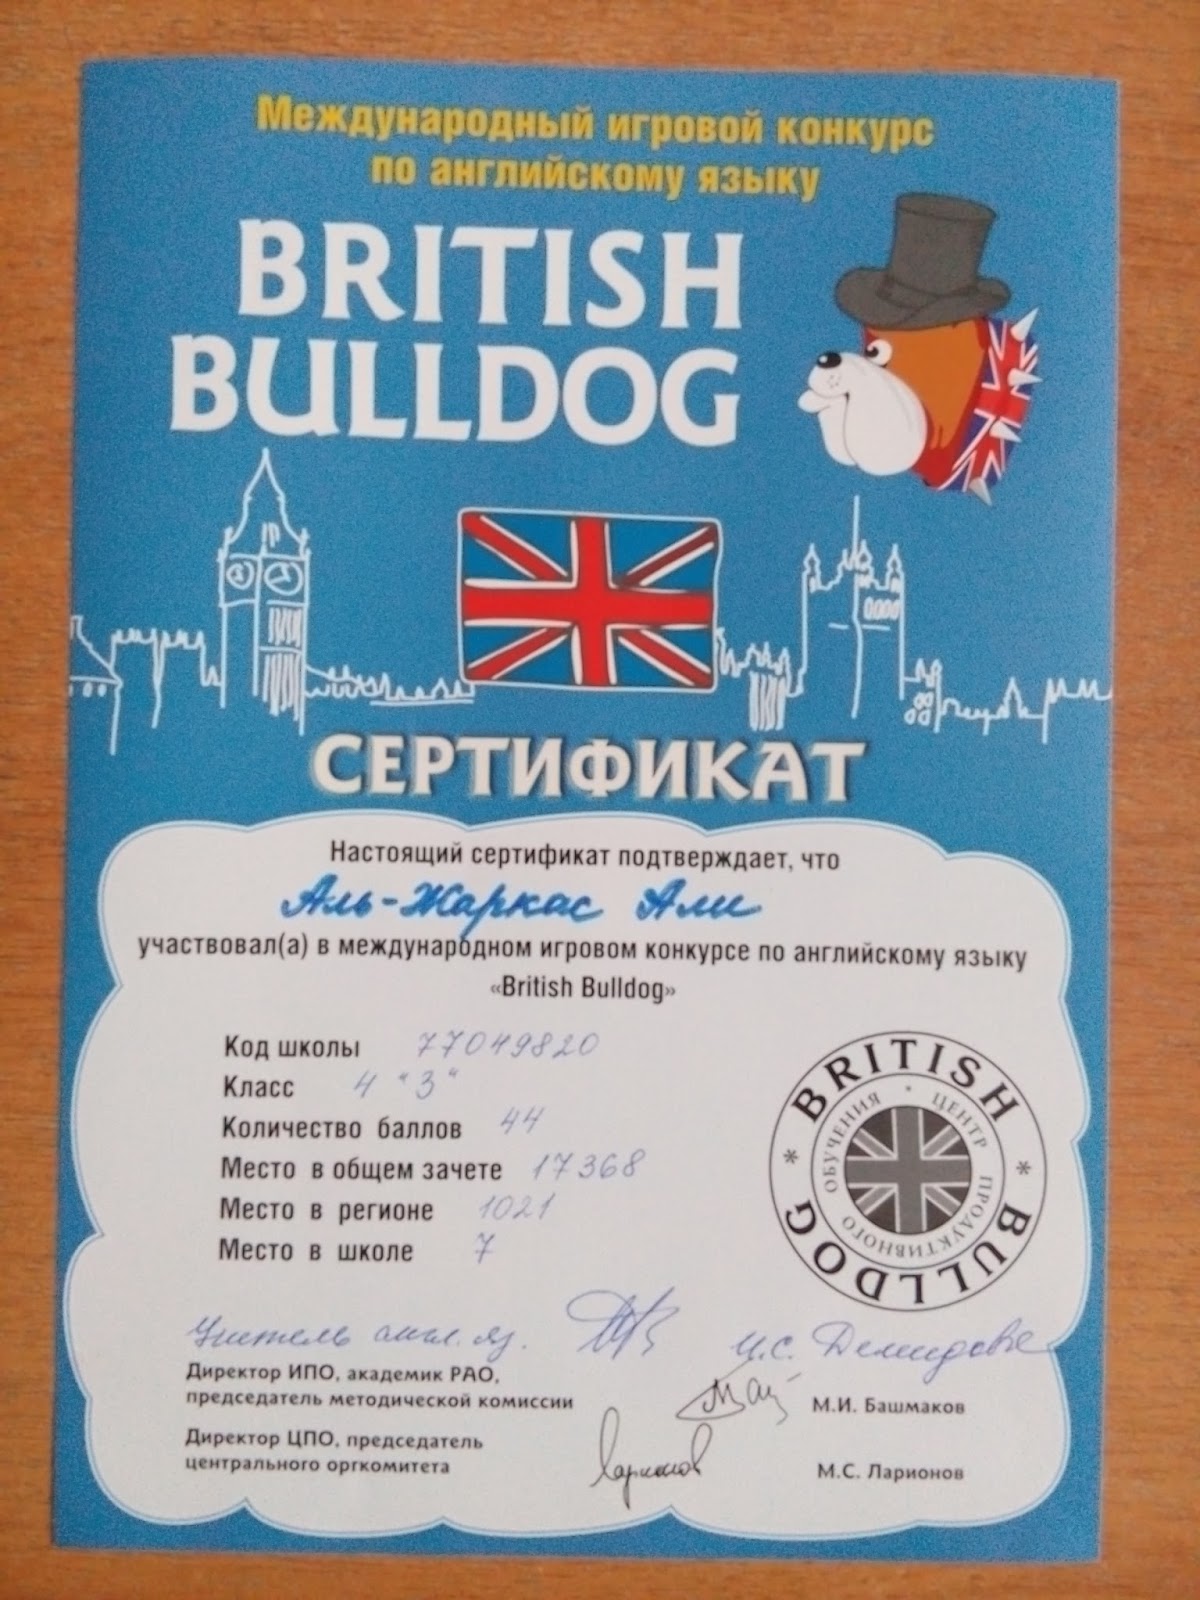 Бульдог конкурс по английскому языку. Британский бульдог сертификат. Британский бульдог конкурс по английскому языку. Международный игровой конкурс по английскому языку British Bulldog.